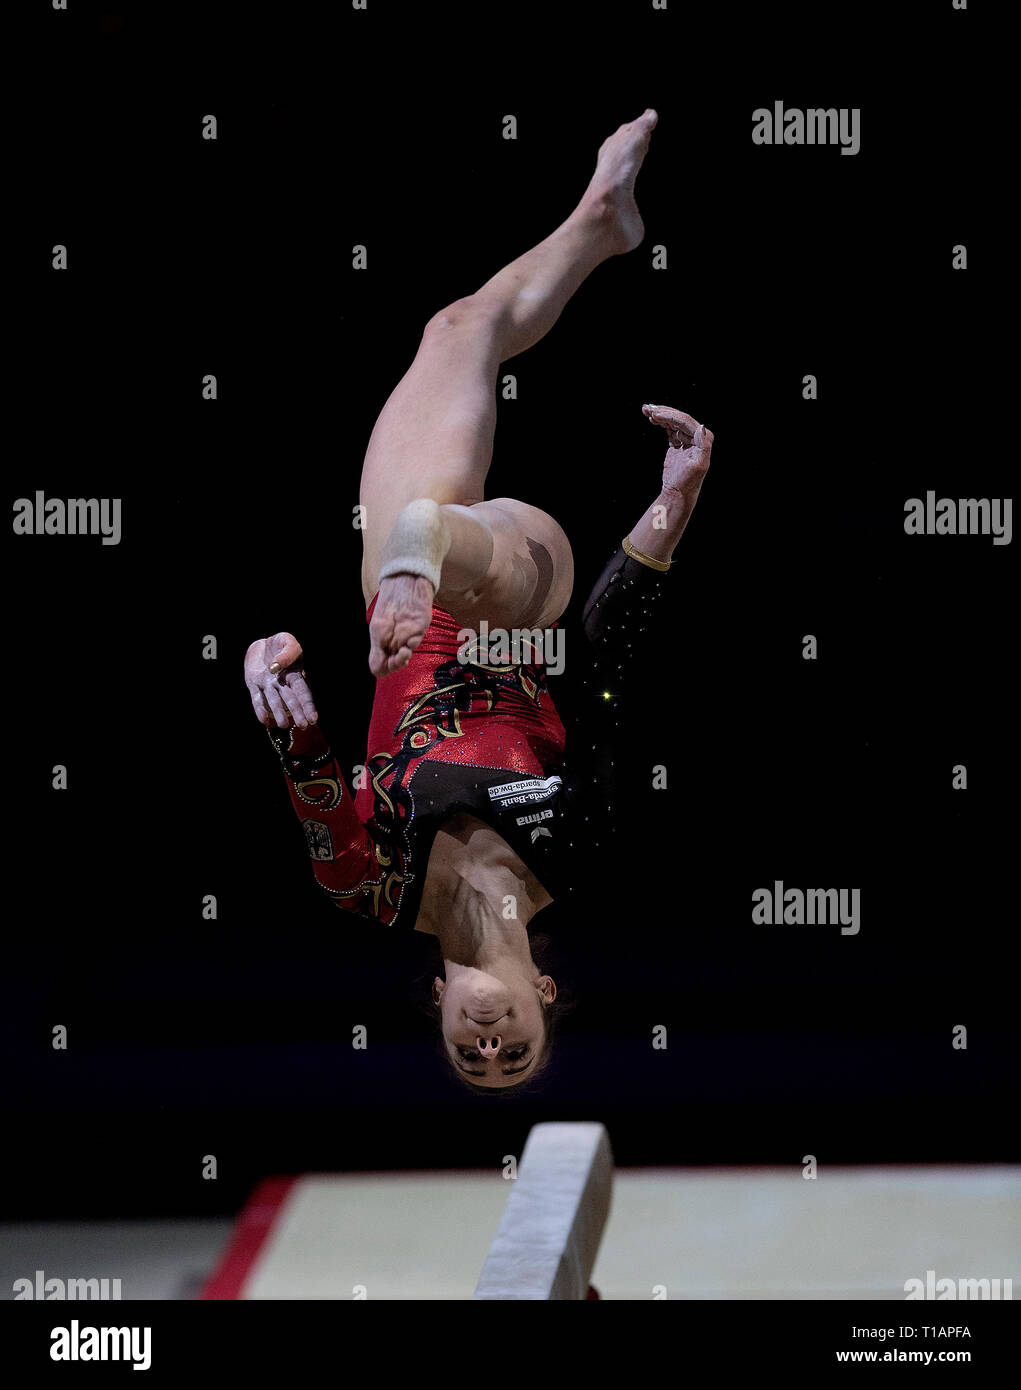 Leah Griesser (Allemagne) vu en action lors de la Coupe du Monde de Gymnastique 2019 à Birmingham dans l'Arène de Genting. Banque D'Images